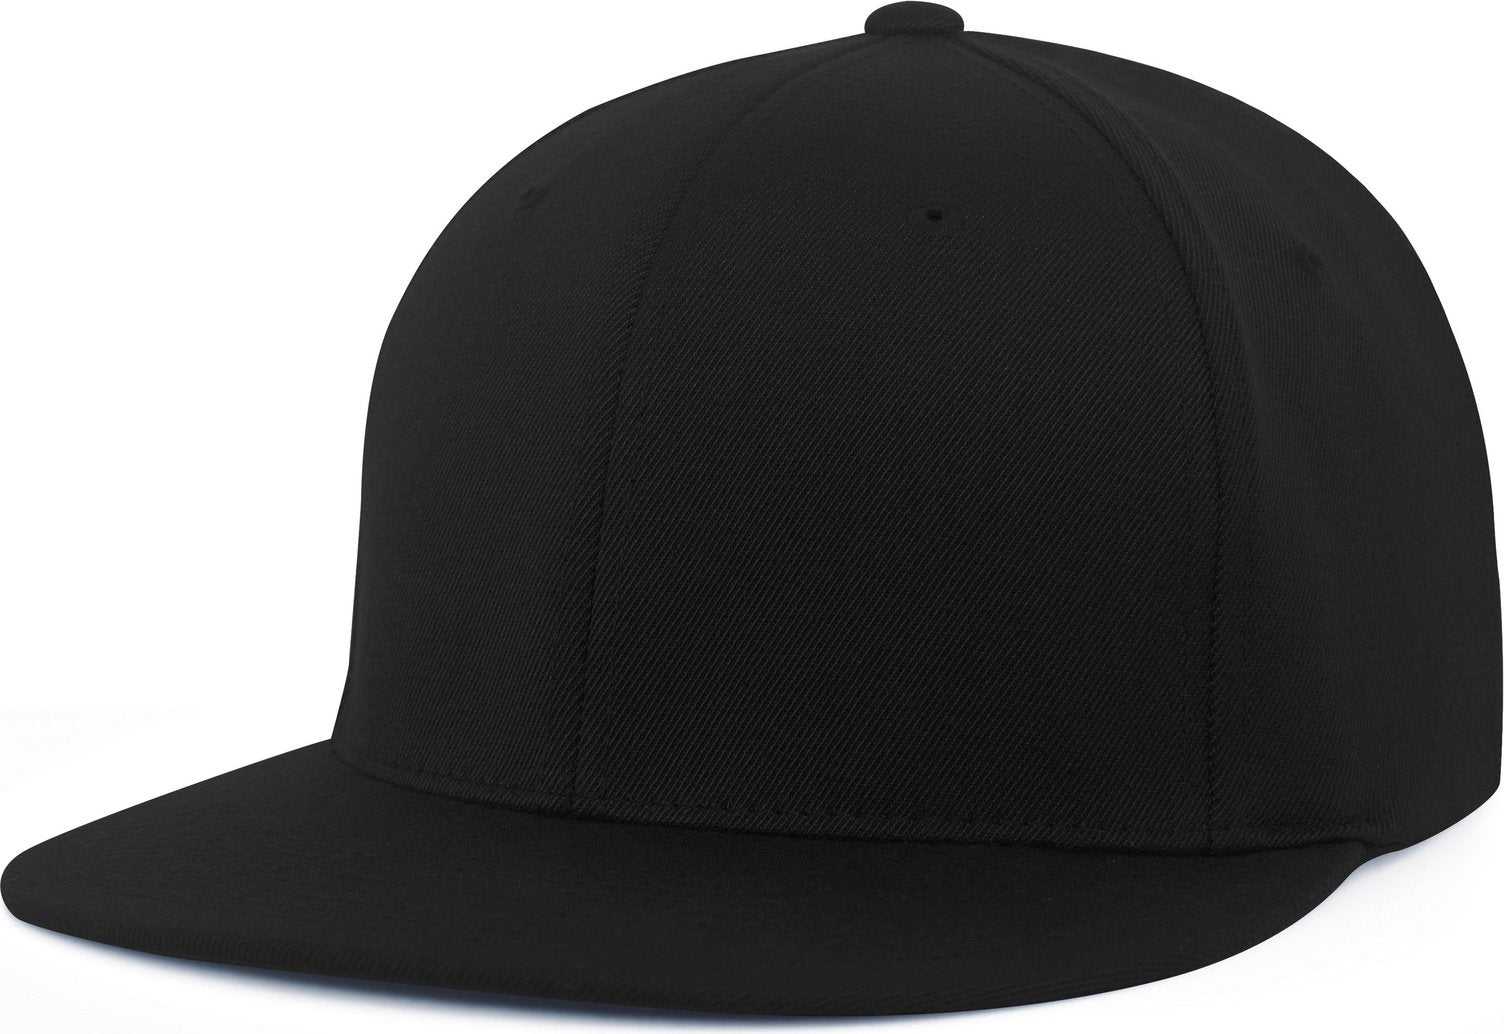 Pacific Headwear Es811 Premium A/C?›?ý Performance Flexfit Cap - Black - HIT a Double